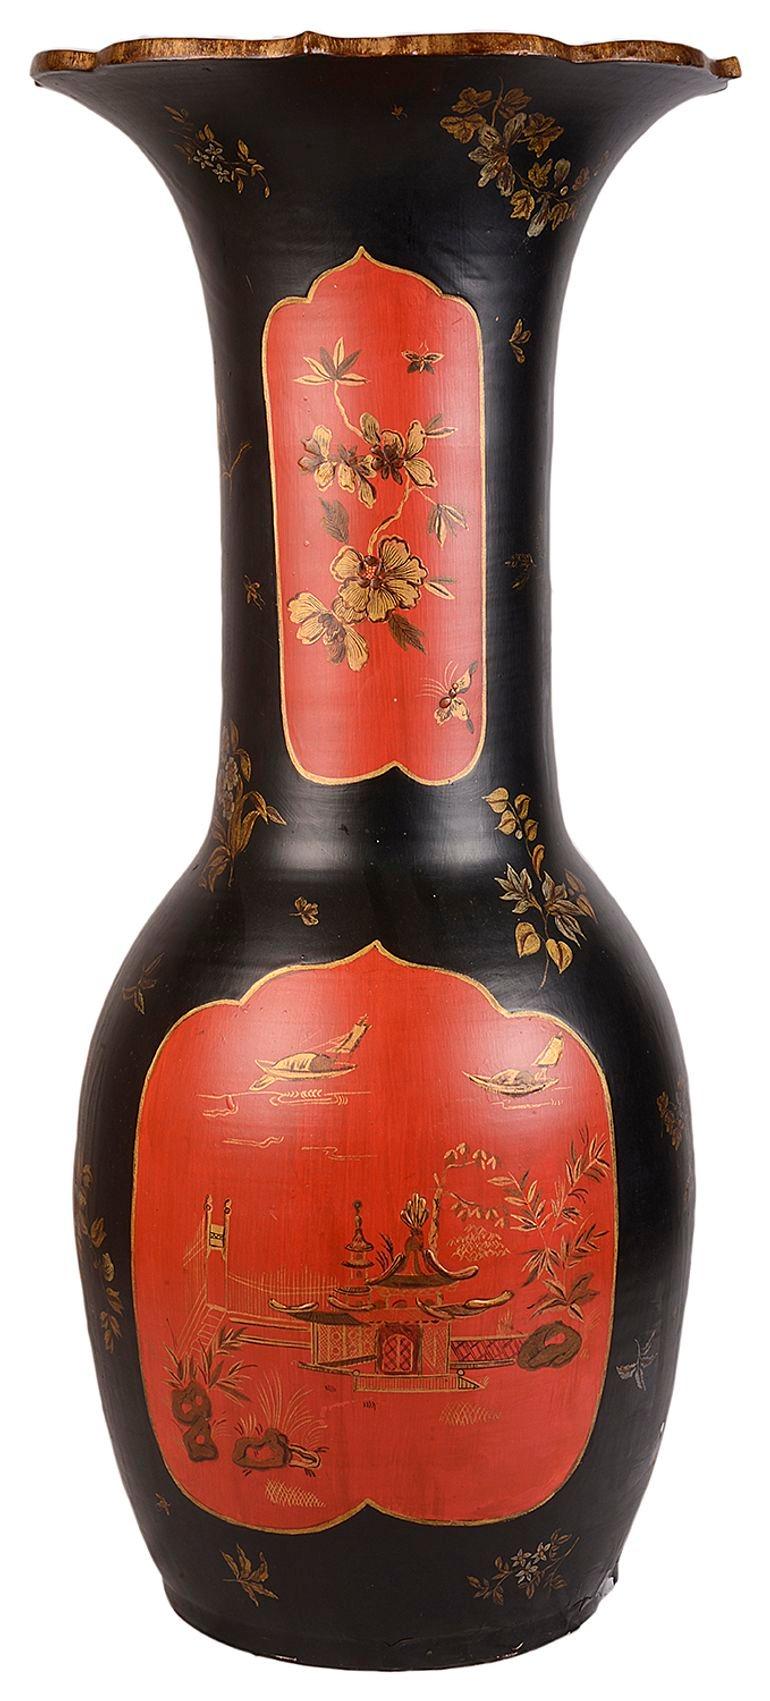 Vase en laque Chinoiserie japonaise du 19e siècle, à fond noir avec des panneaux rouges peints à la main avec des décorations florales, vers 1880.
 
Lot 72 